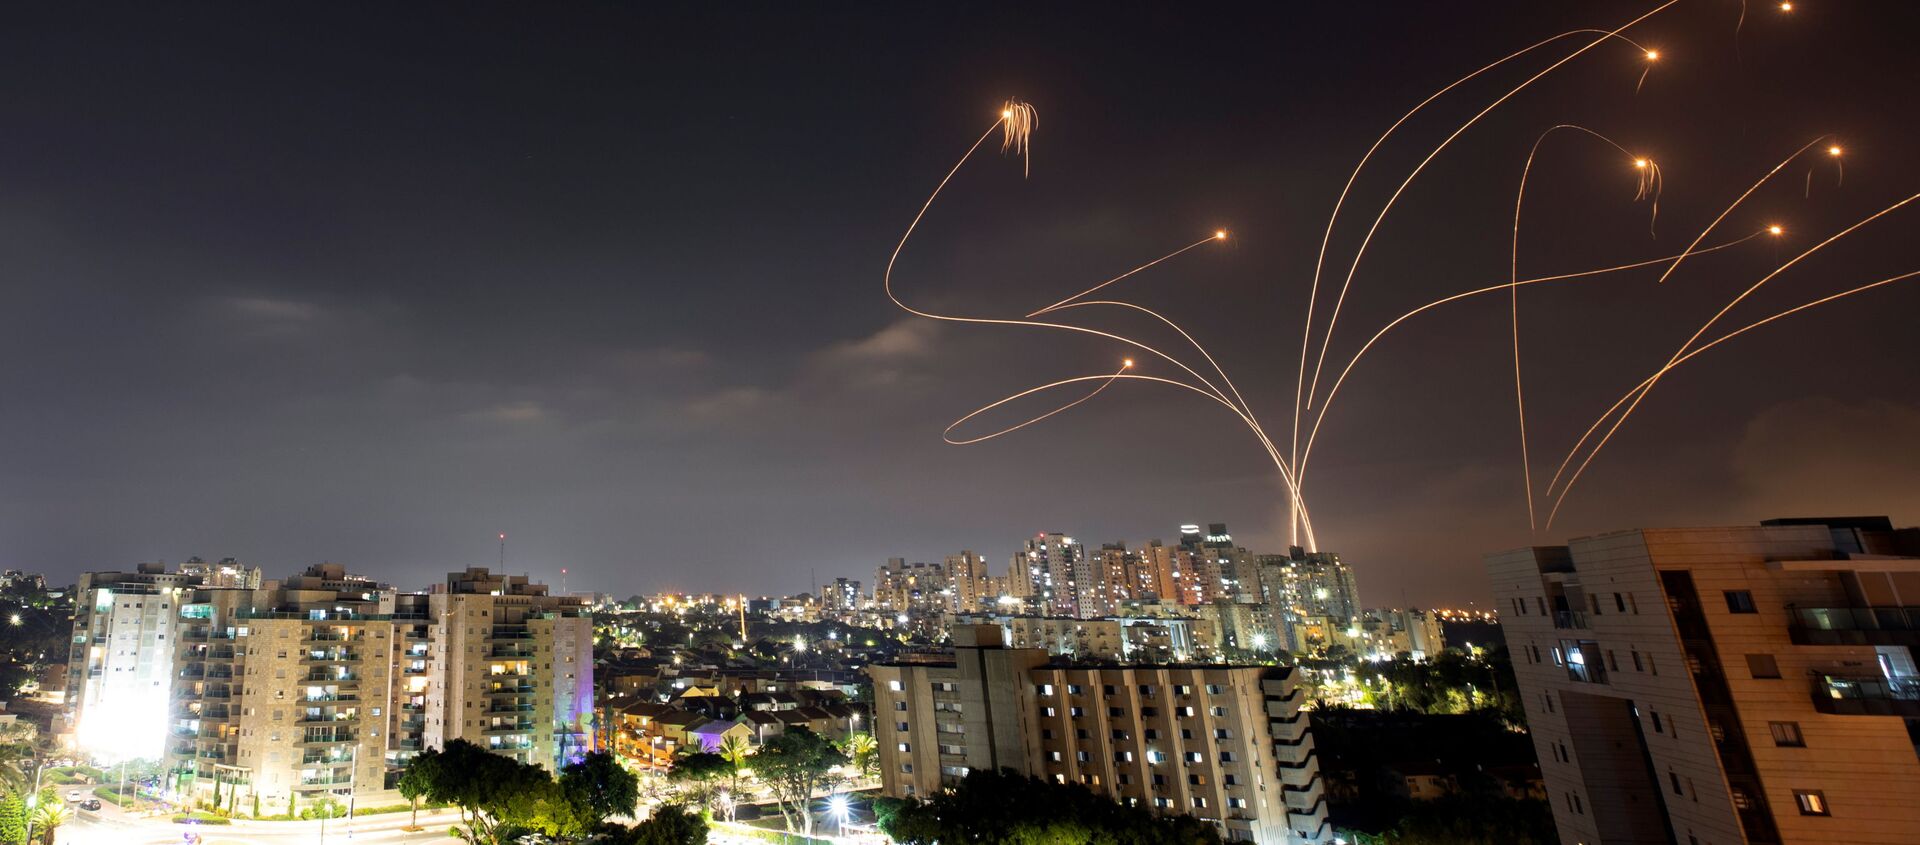 Le drone de fer israélien intercepte les roquettes lancées depuis la bande de Gaza, Israël, 10 mai 2021 - Sputnik Afrique, 1920, 11.05.2021